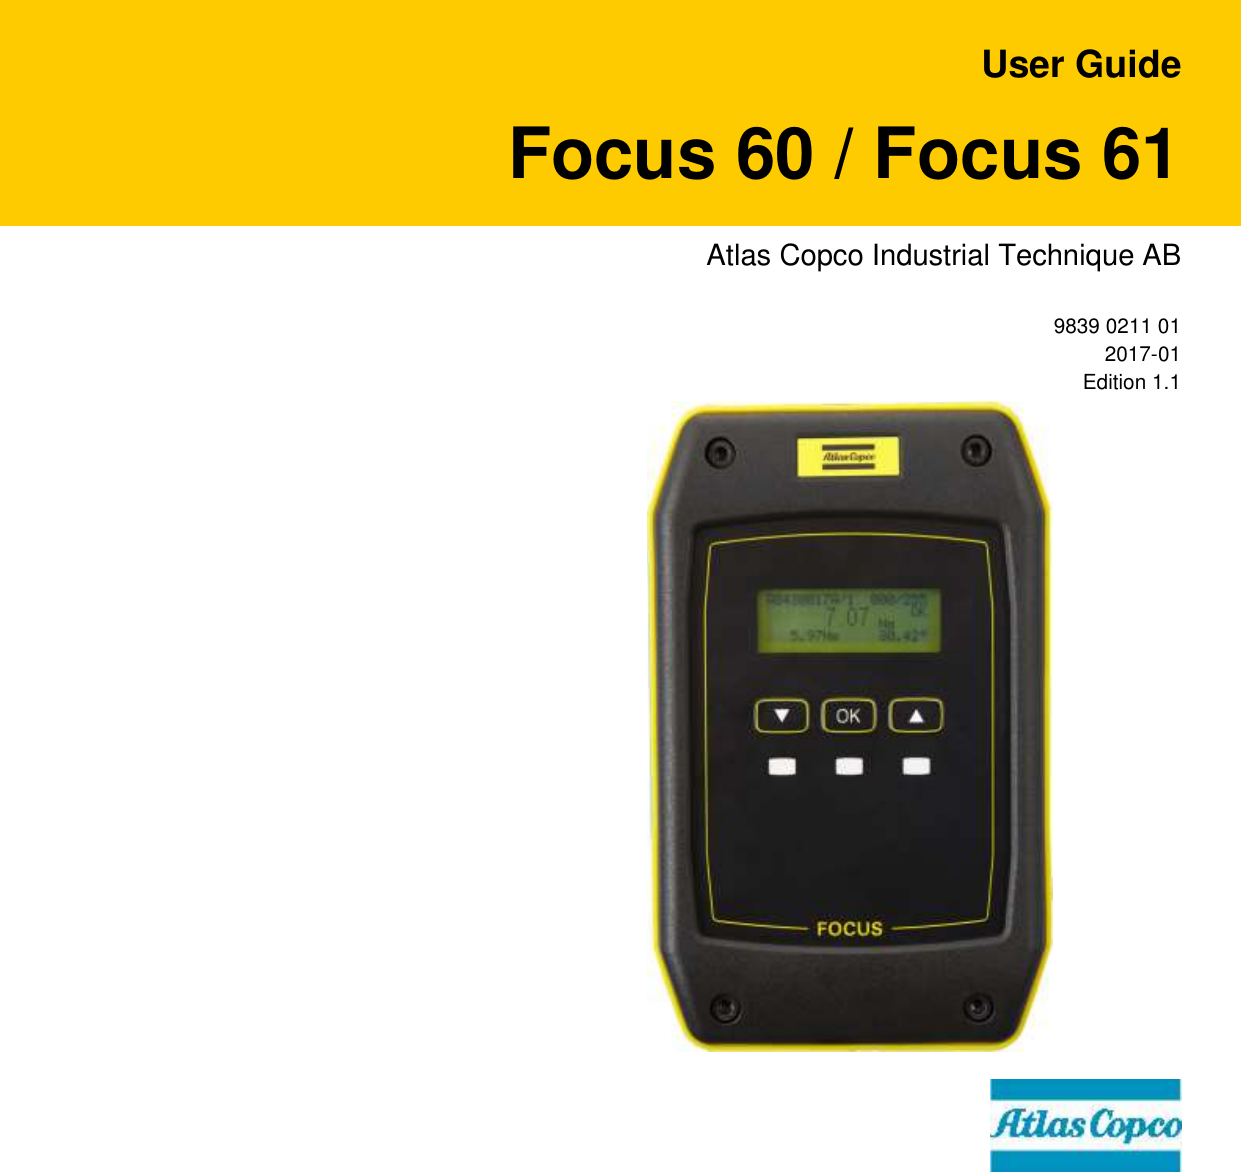    User Guide Focus 60 / Focus 61 Atlas Copco Industrial Technique AB 9839 0211 01 2017-01 Edition 1.1 